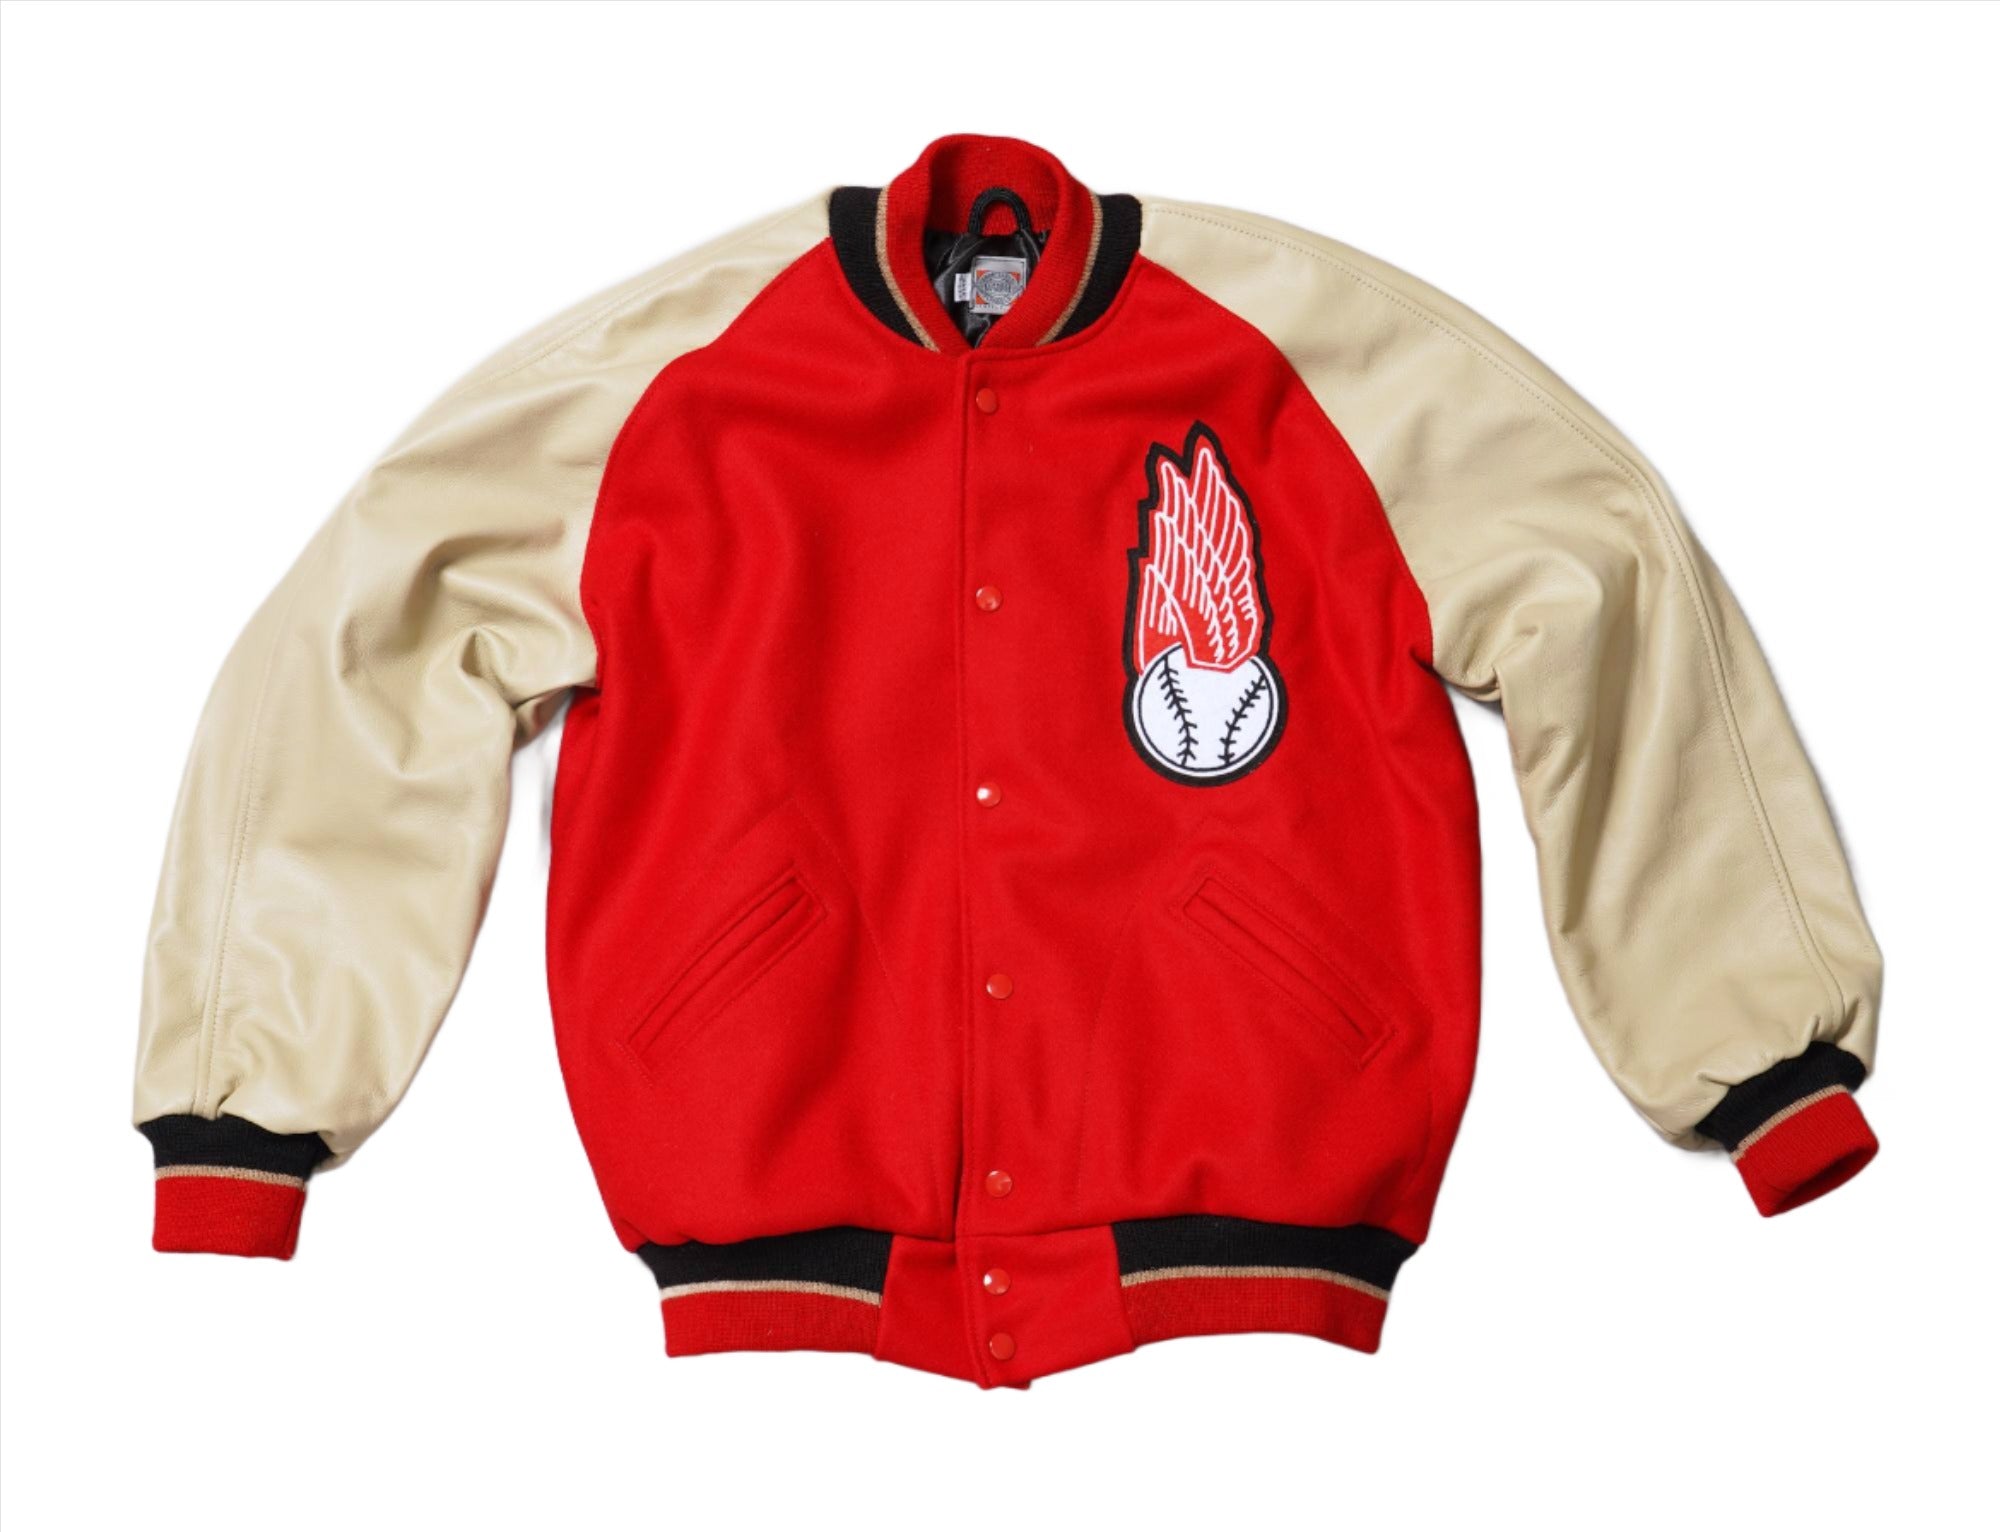 St. Louis Cardinals 1950 Authentic Jacket